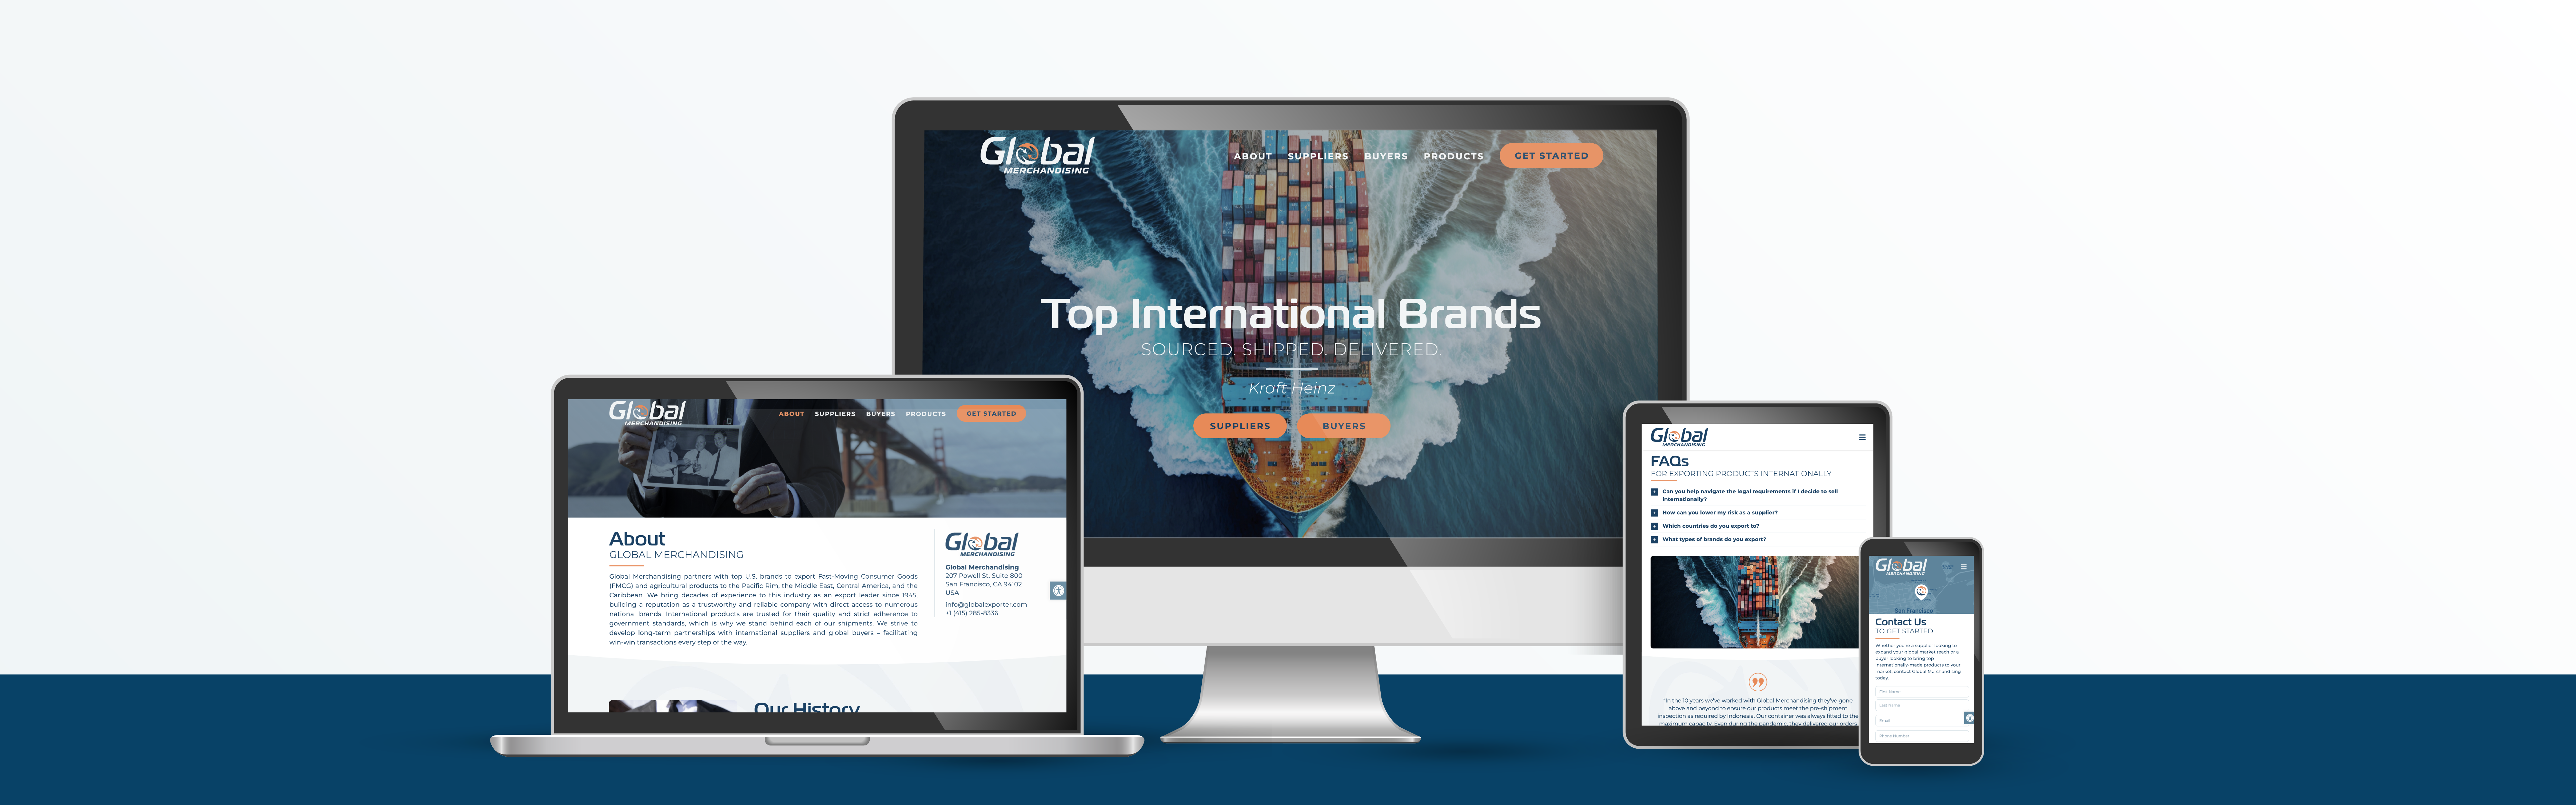 Global Merchandising website design